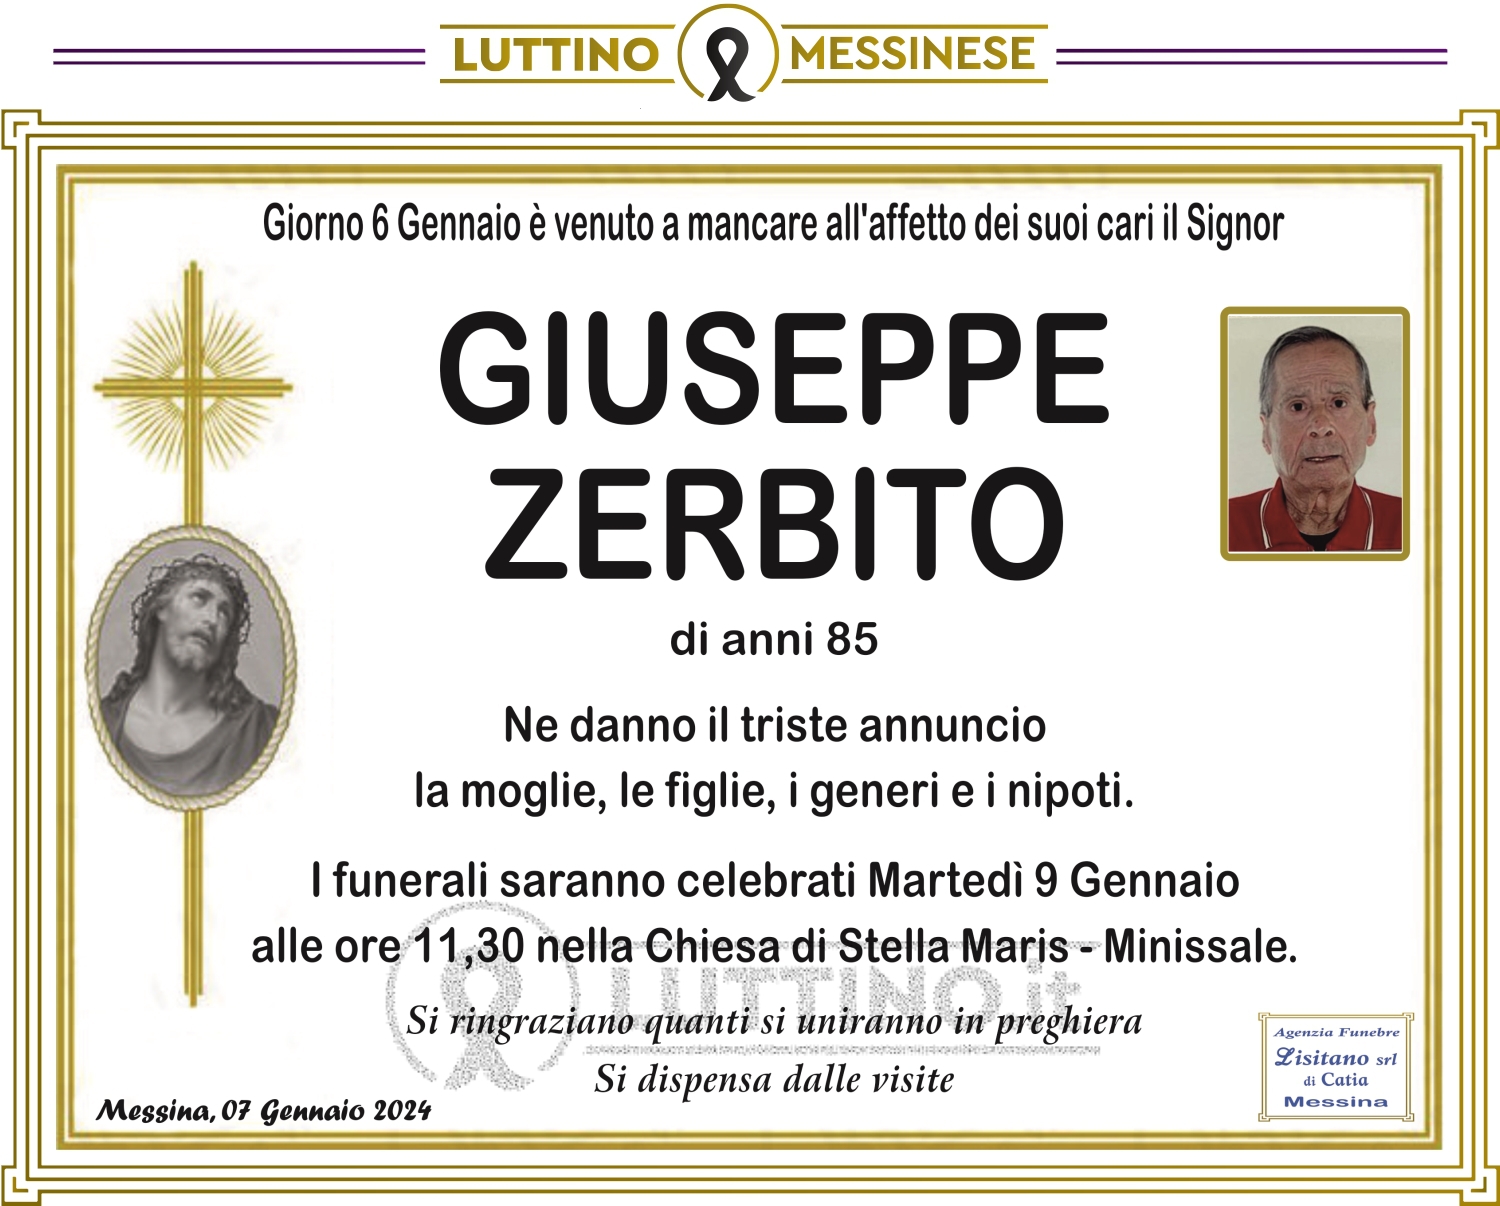 Giuseppe Zerbito